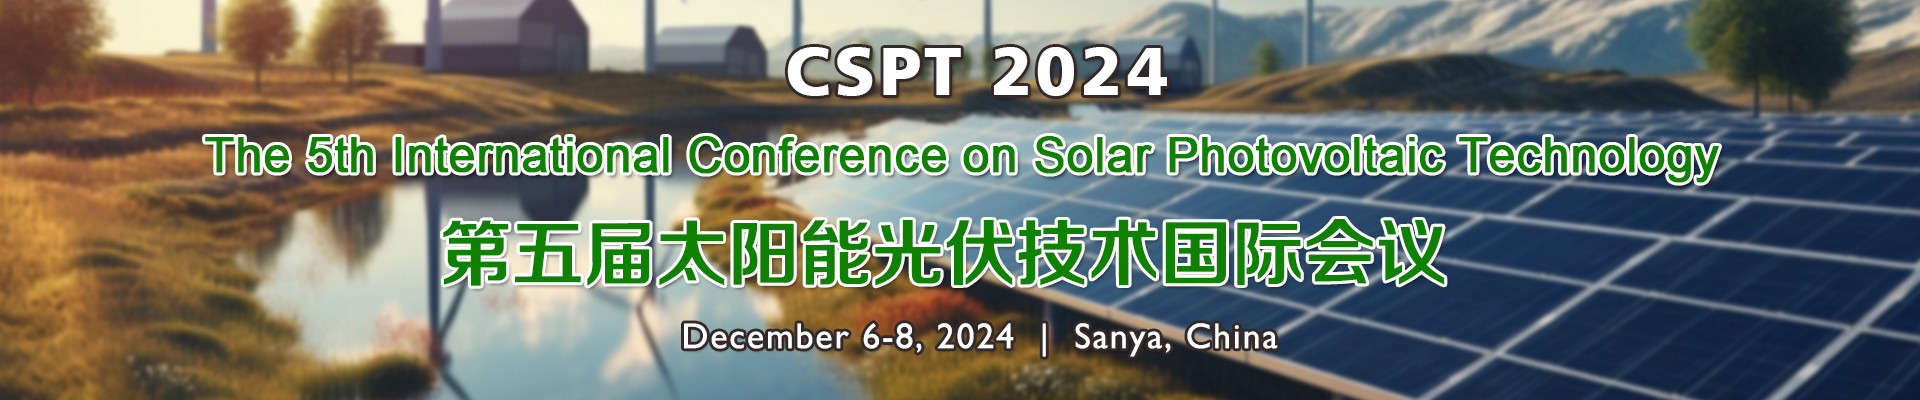 第五届太阳能光伏技术国际会议(CSPT 2024)